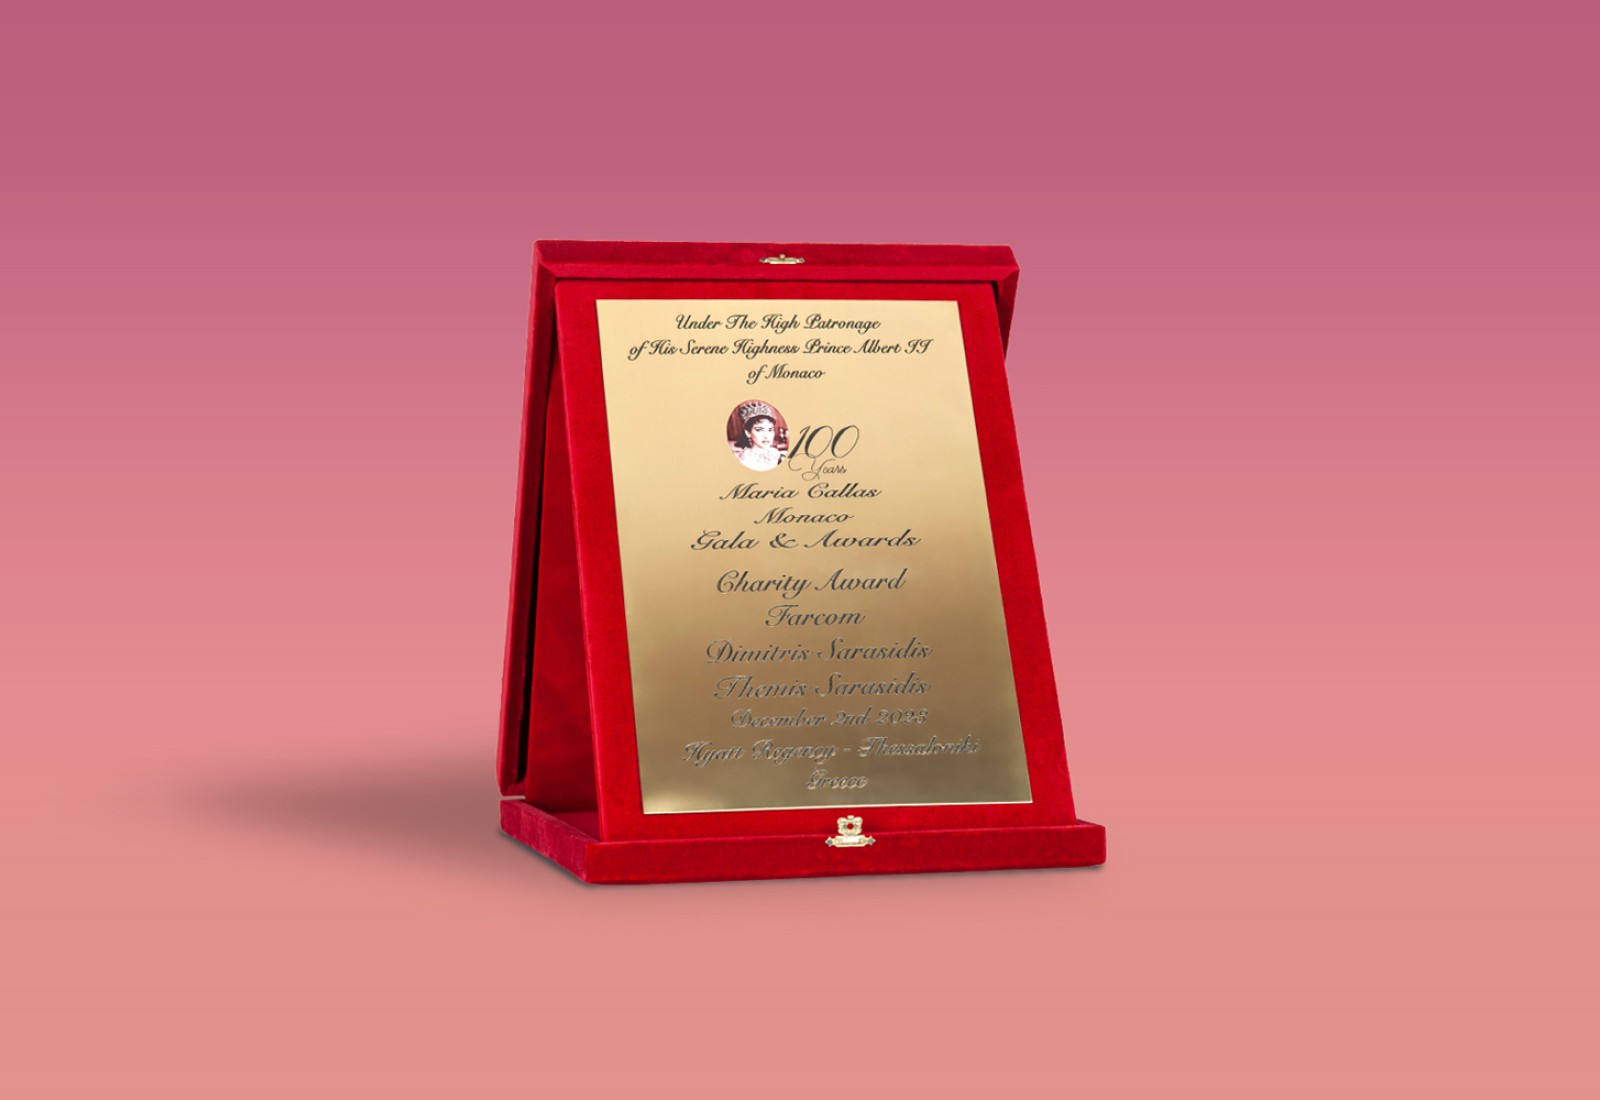 "Charity Award" for FARCOM Company, at the anniversary "Maria Callas Monaco Gala & Awards"